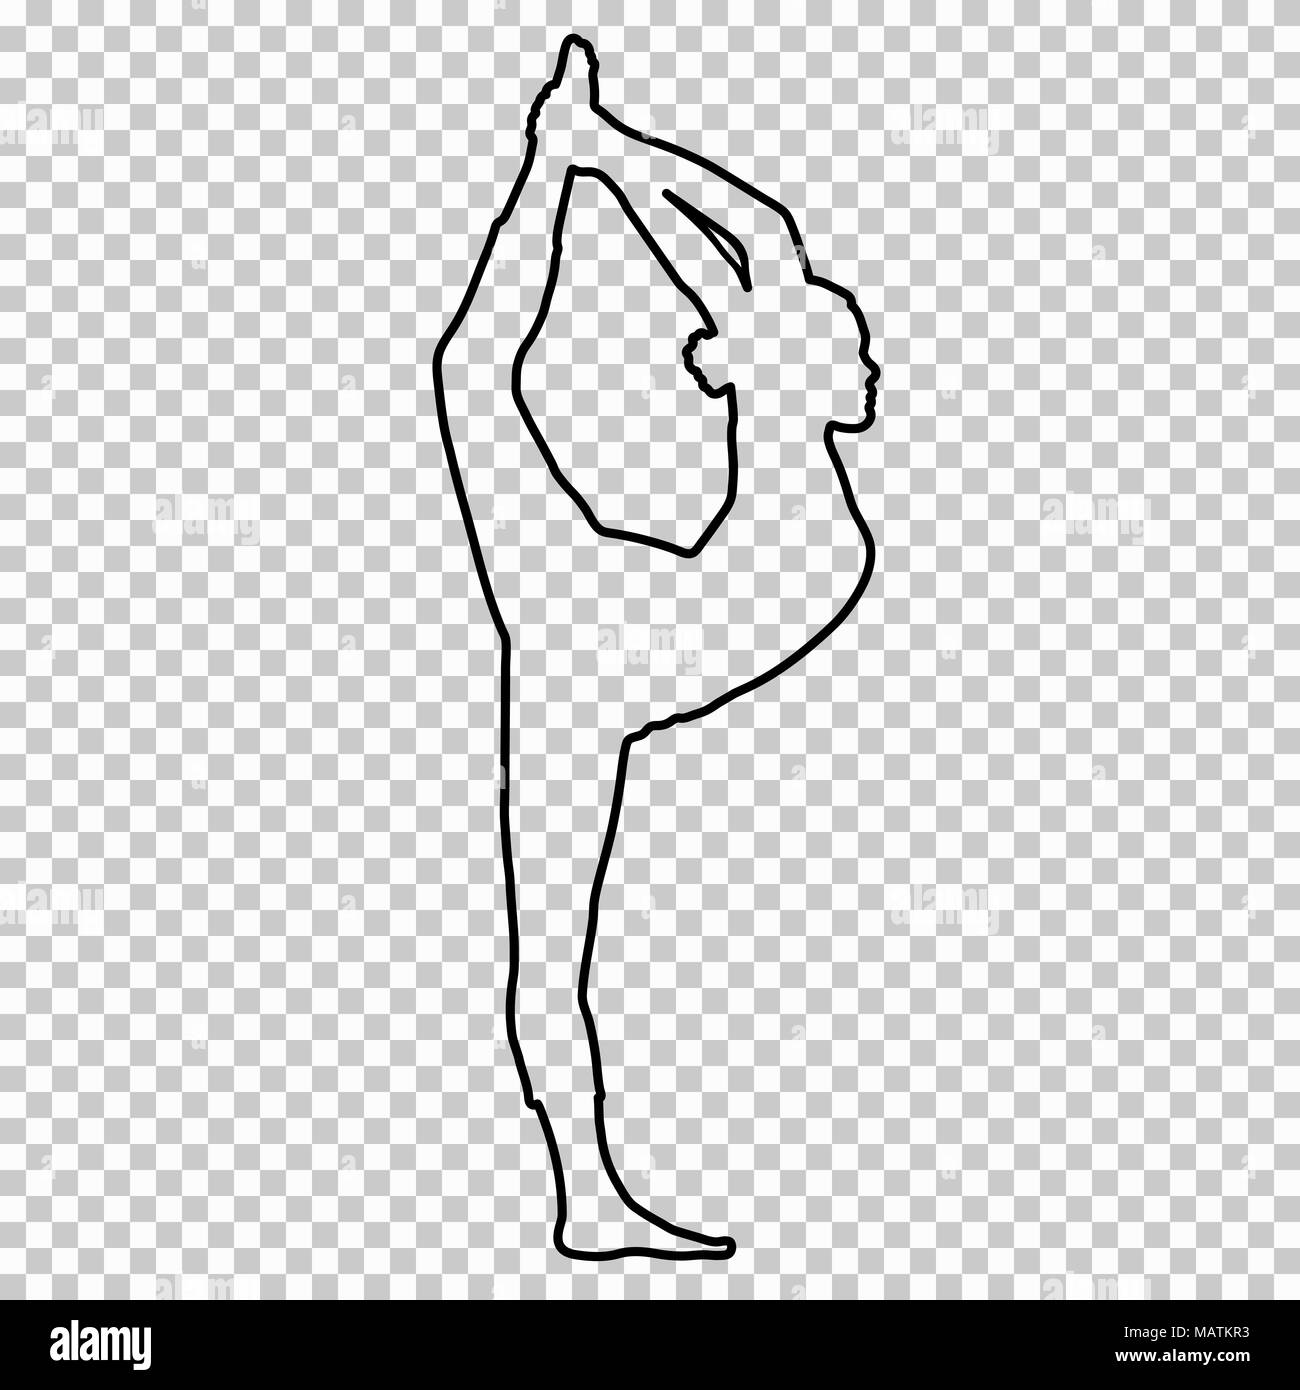 Überblick Abbildung Frau tun stretching Beine, Split auf transparentem Hintergrund, silhouette Mädchen in Gymnastik, Yoga, Kontur Portrait, schwarze und weiße Linie zeichnen, Schablone. Vector Illustration Stock Vektor